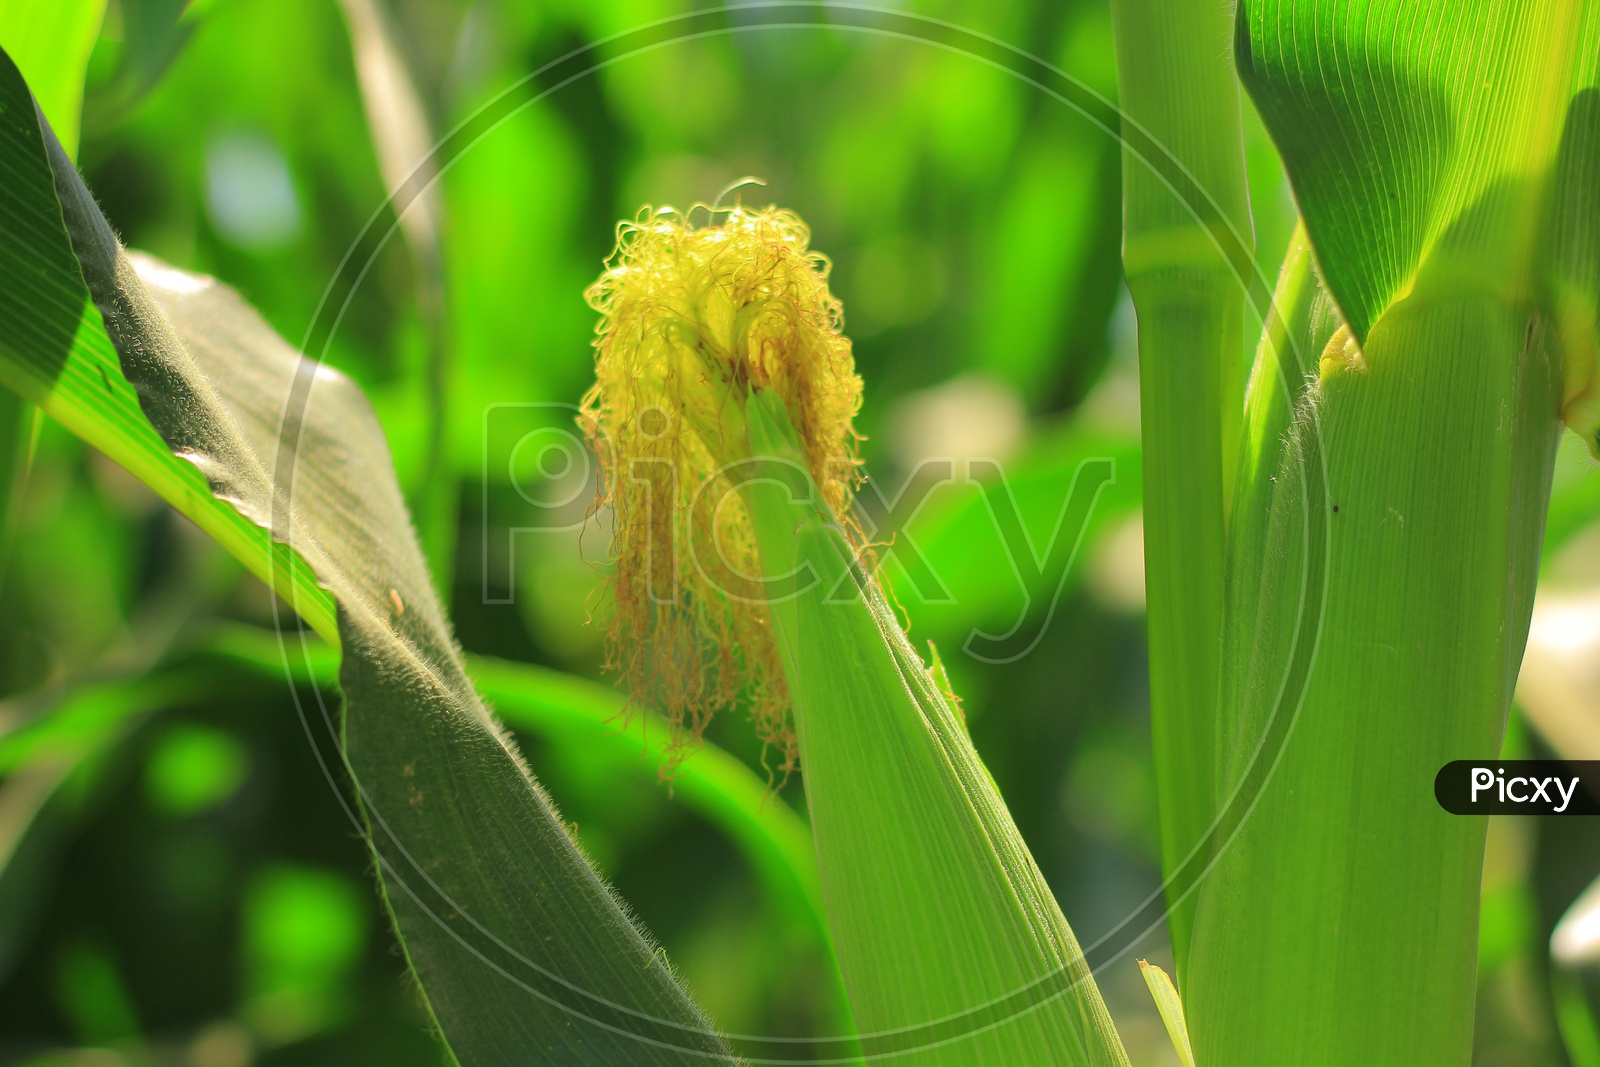 Corn Cobs in a Corn Field Closeup shot